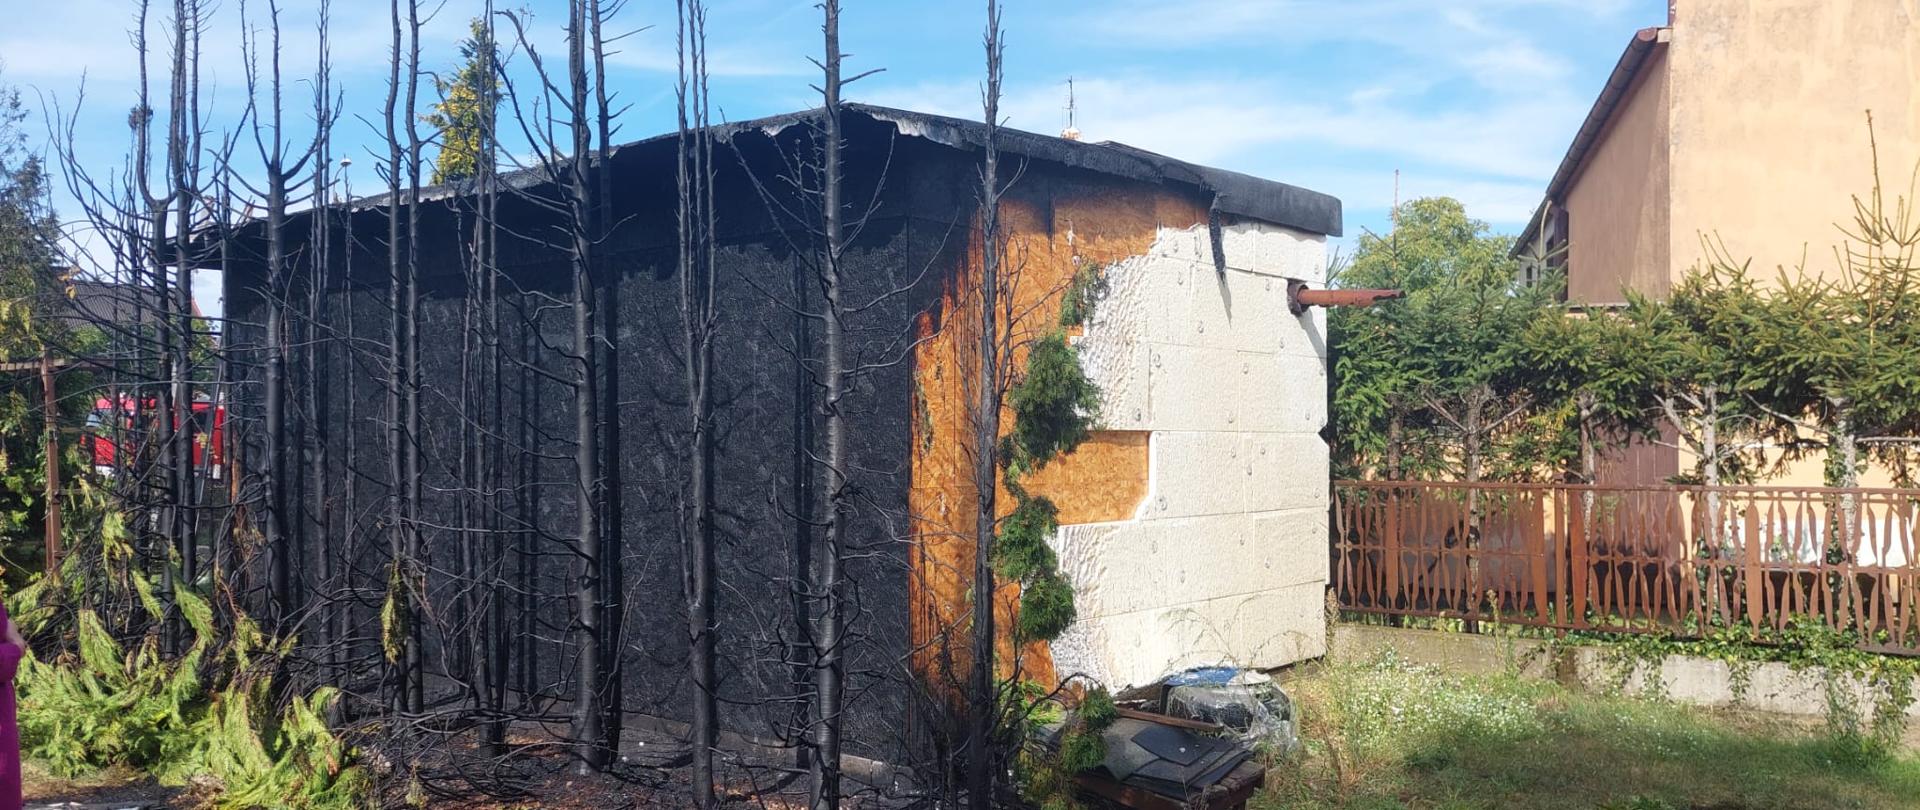 Na zdjęciu widać spalone krzewy oraz nadpalony garaż konstrukcji drewnianej 